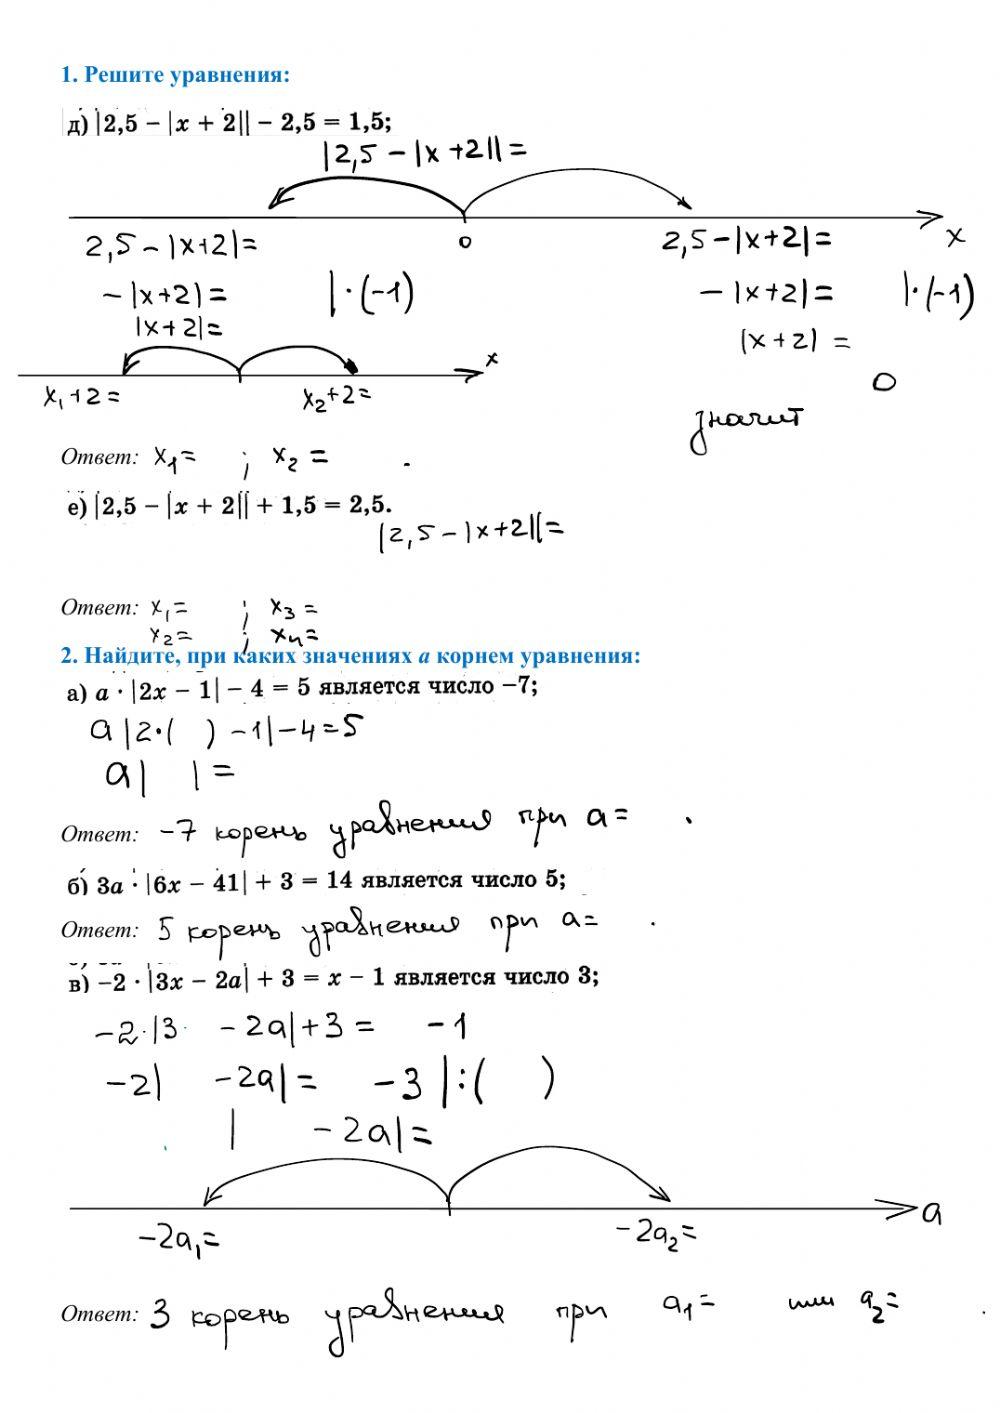 Линейное уравнение с двумя модулями